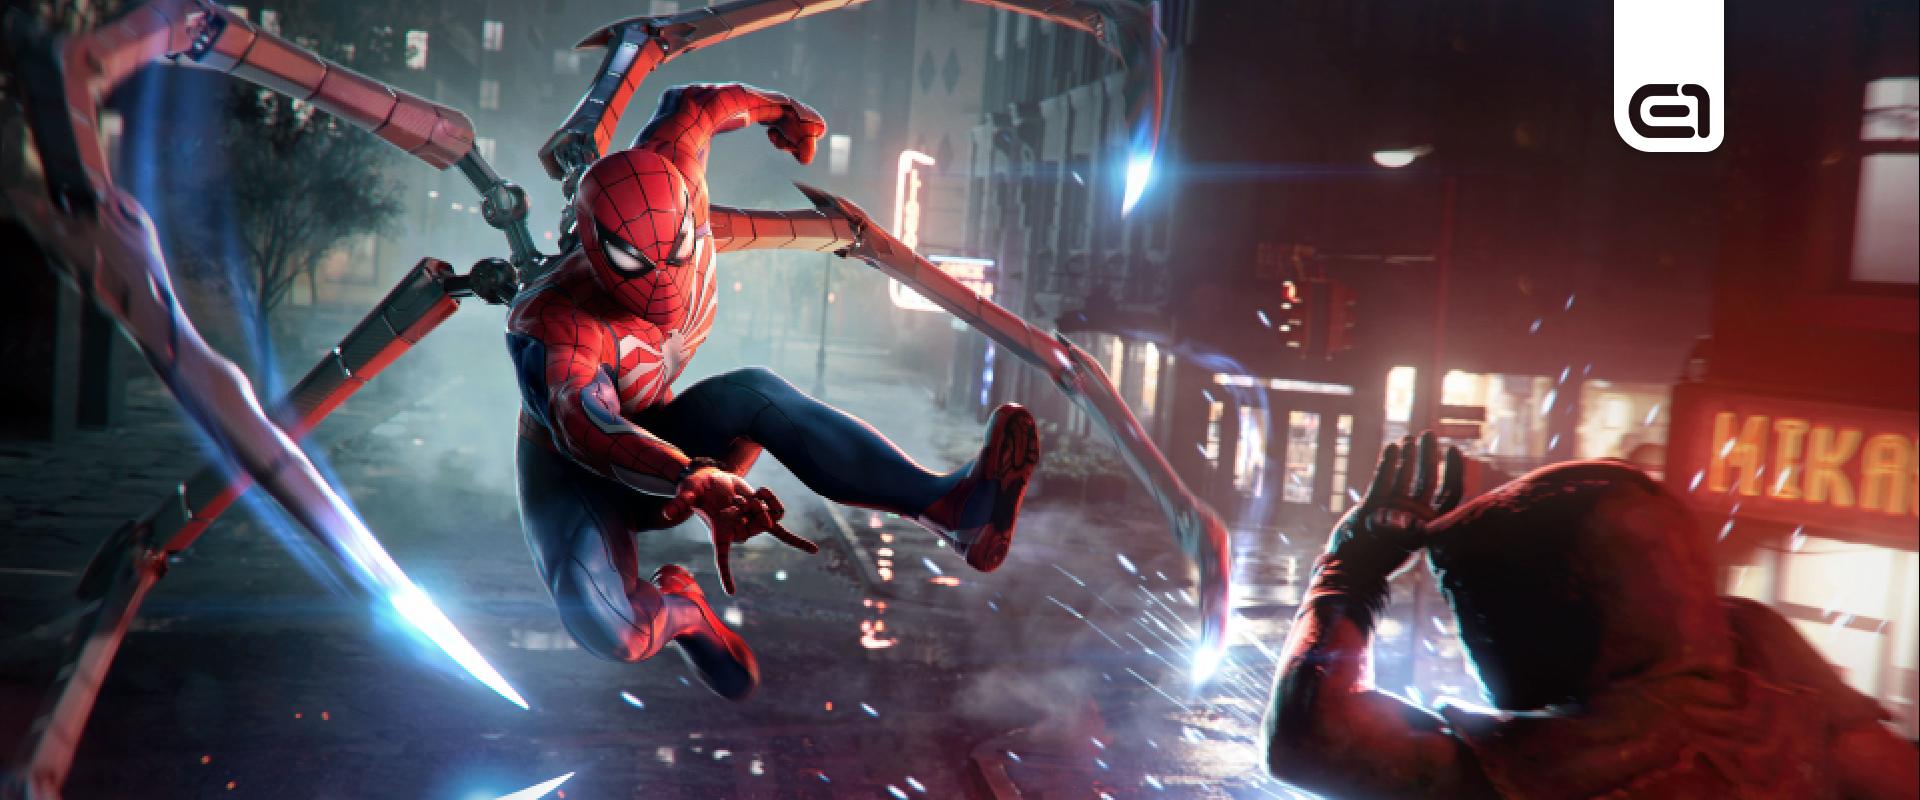 Óriásinak, formabontónak ígérkezik a Marvel's Spider-Man 2, erről maga Peter Parker mesélt